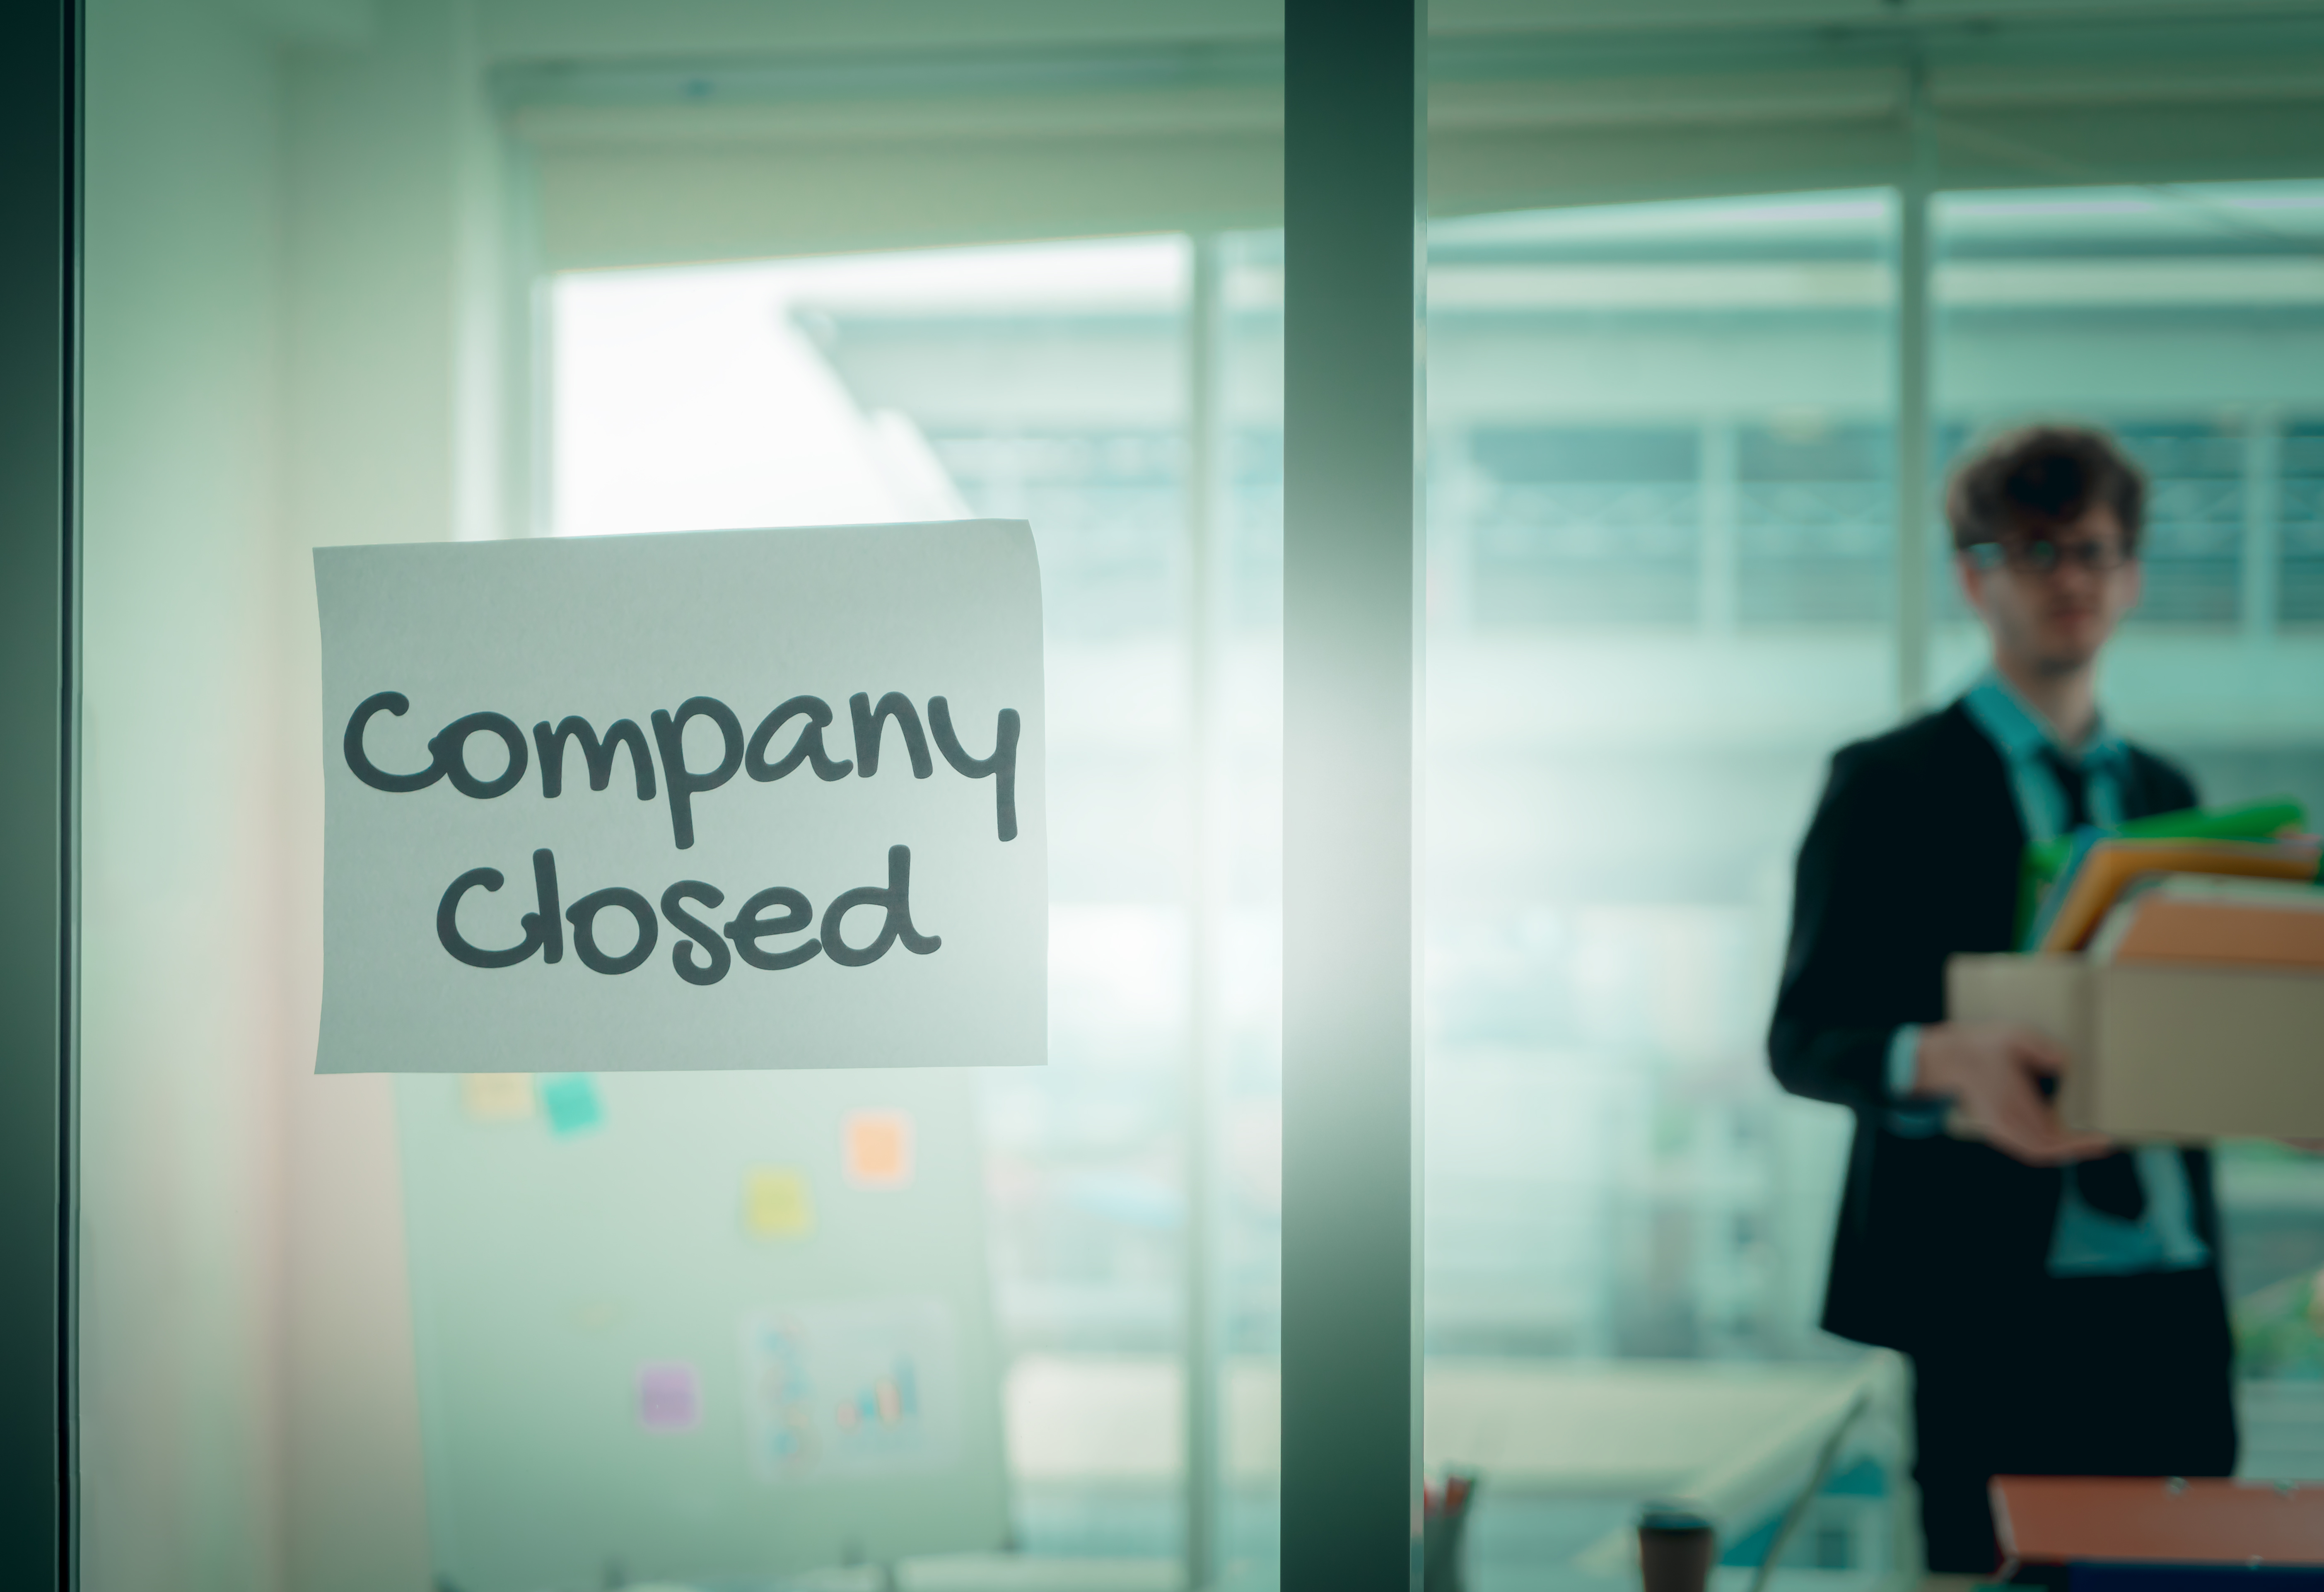 Close company. Closed Company. Организация закрывается. Company closure.